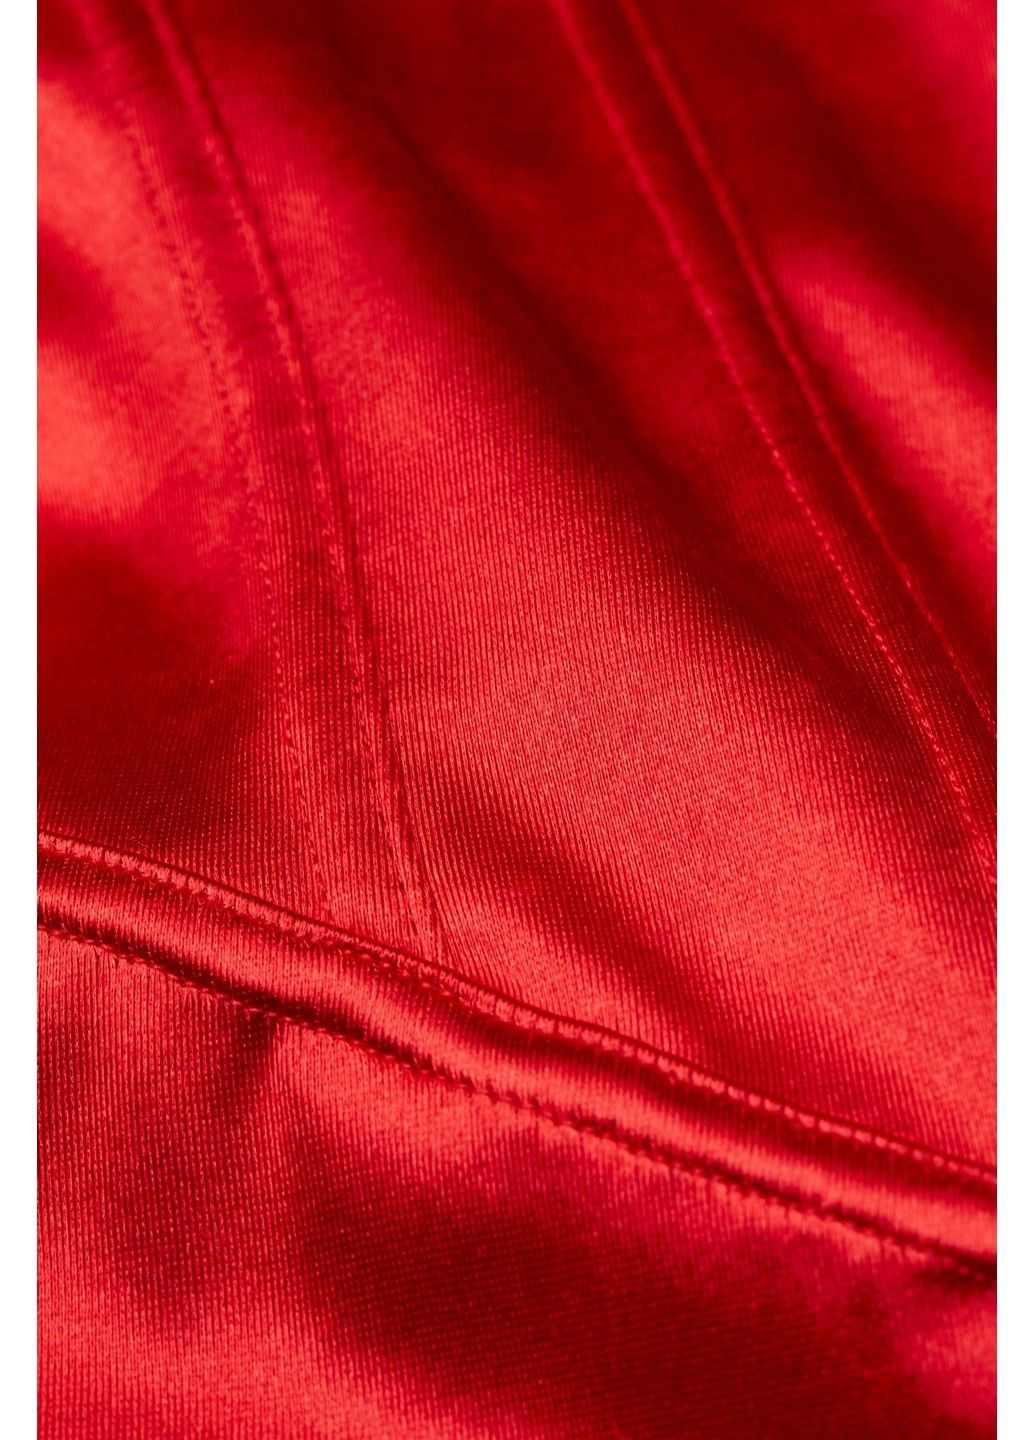 Красное вечернее платье с микро-дефектом H&M однотонное